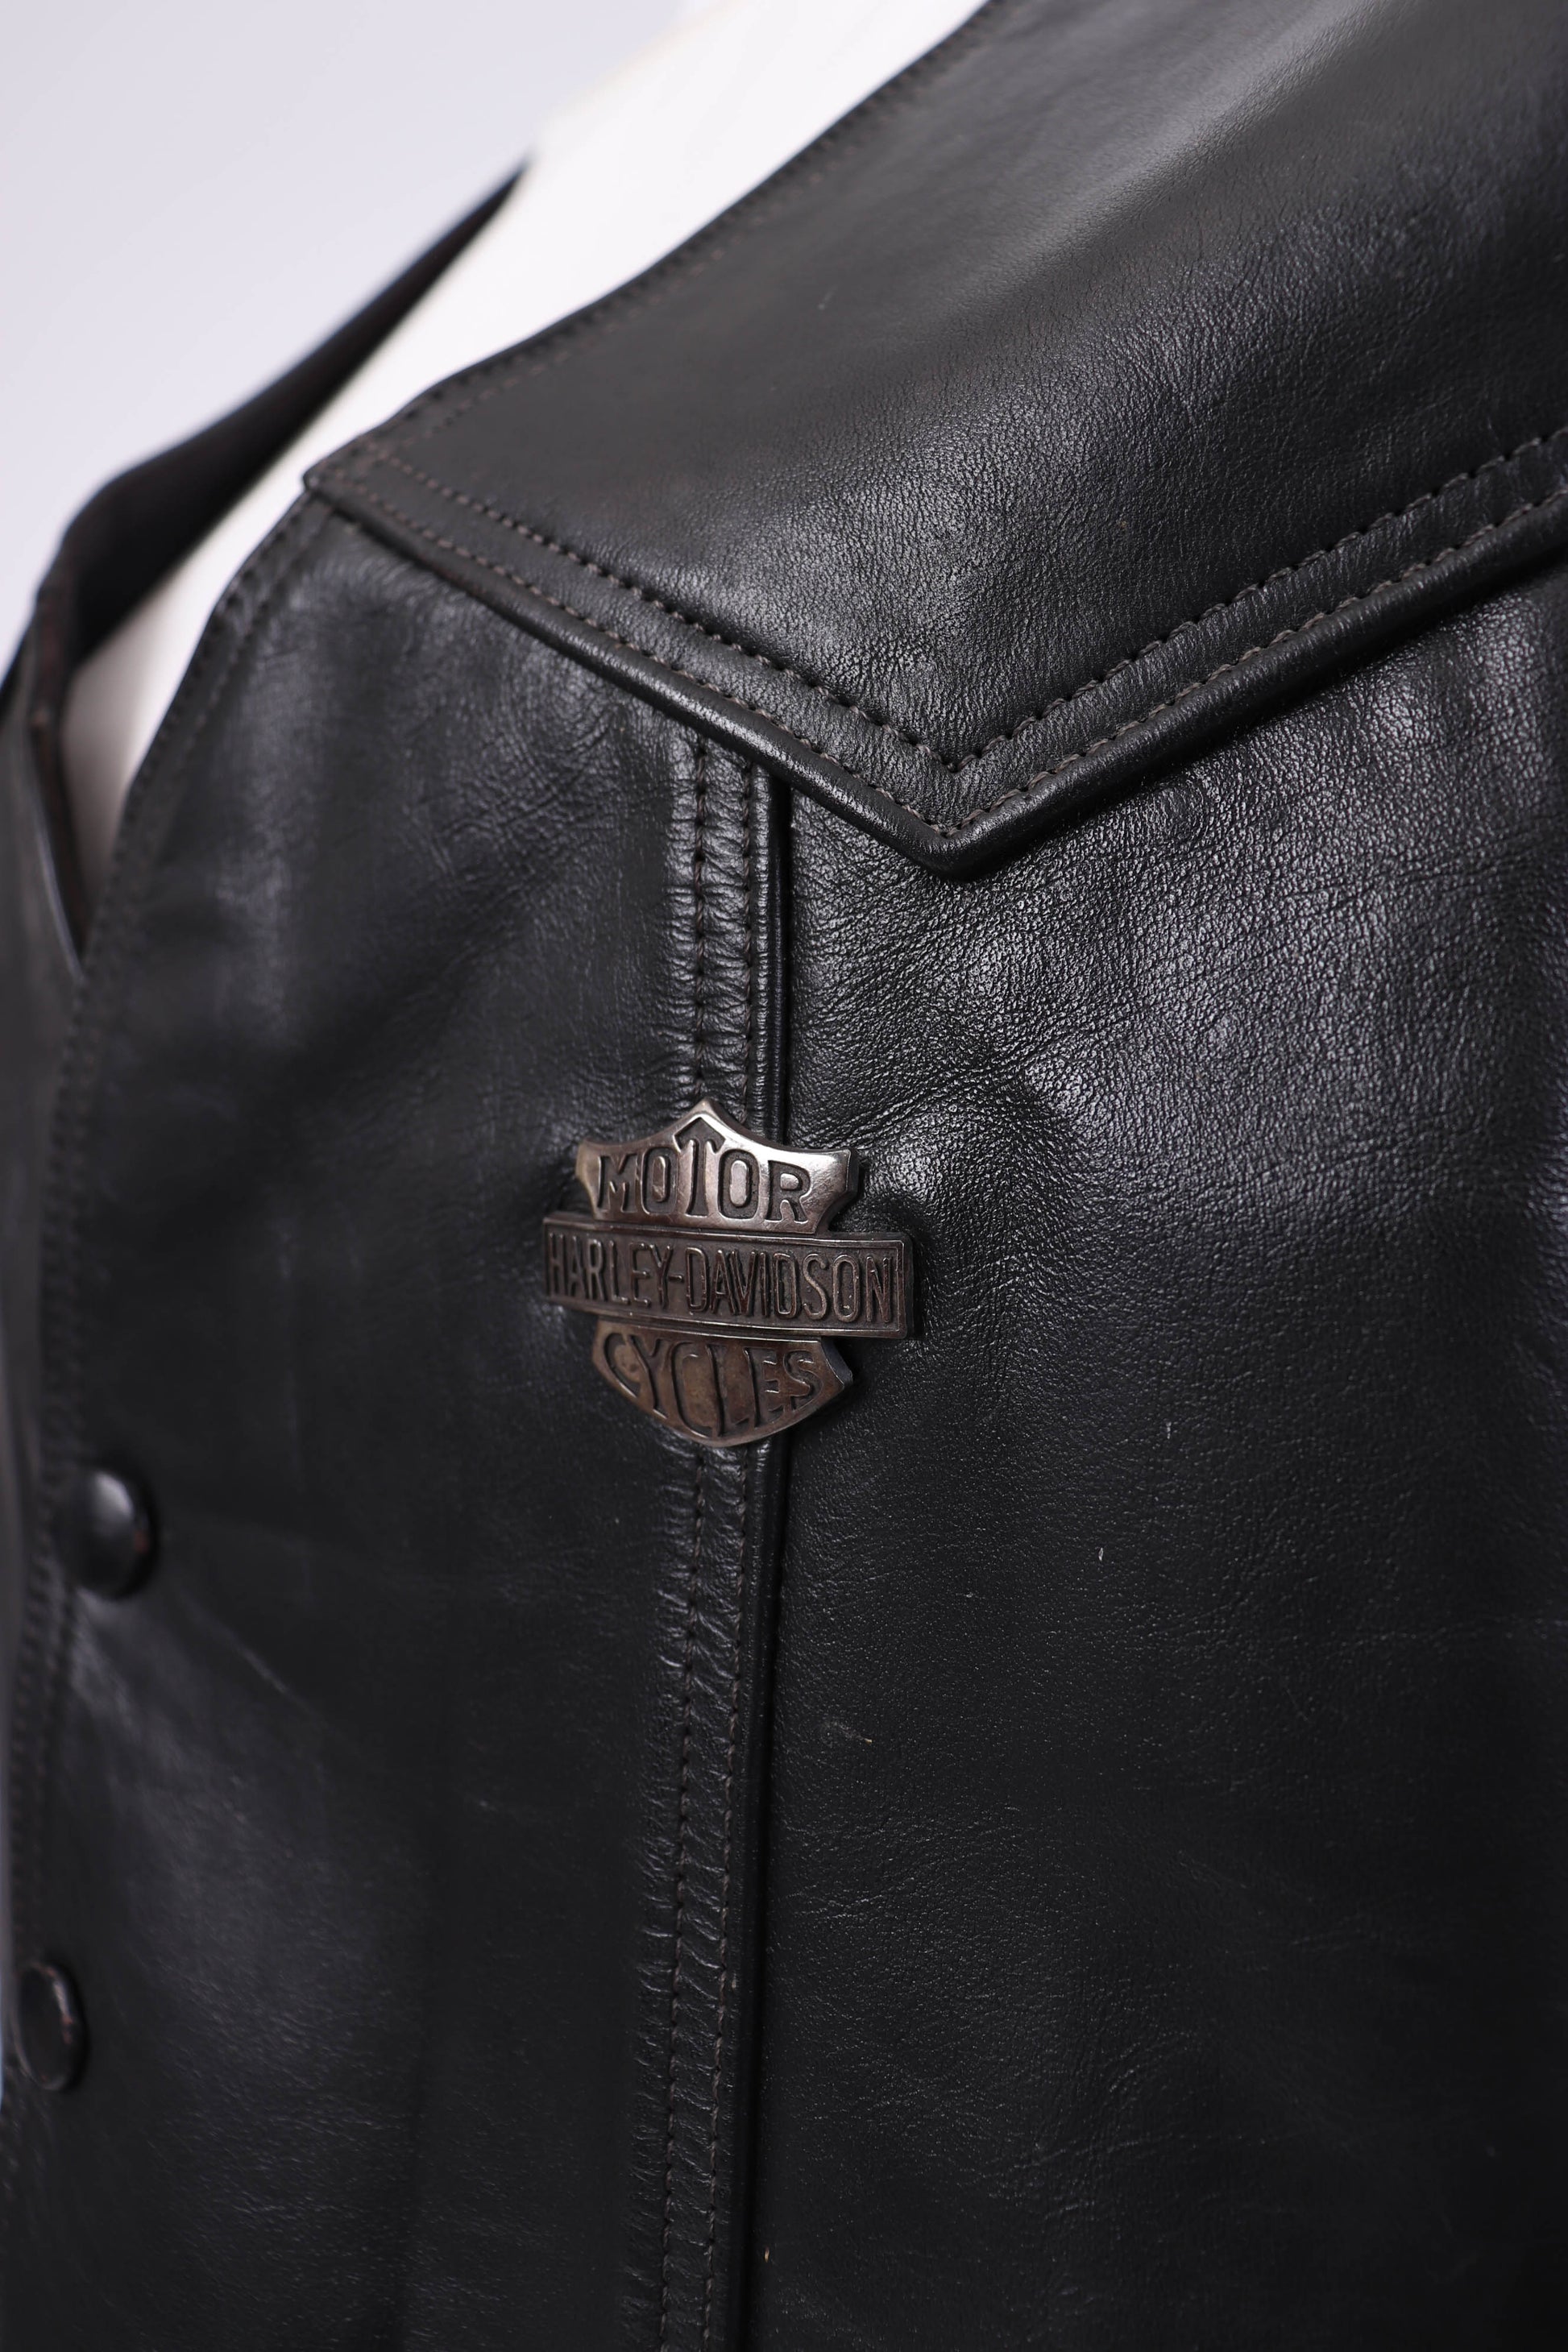 Vintage Harley-Davidson Black Leather Logo Shoulder Bag